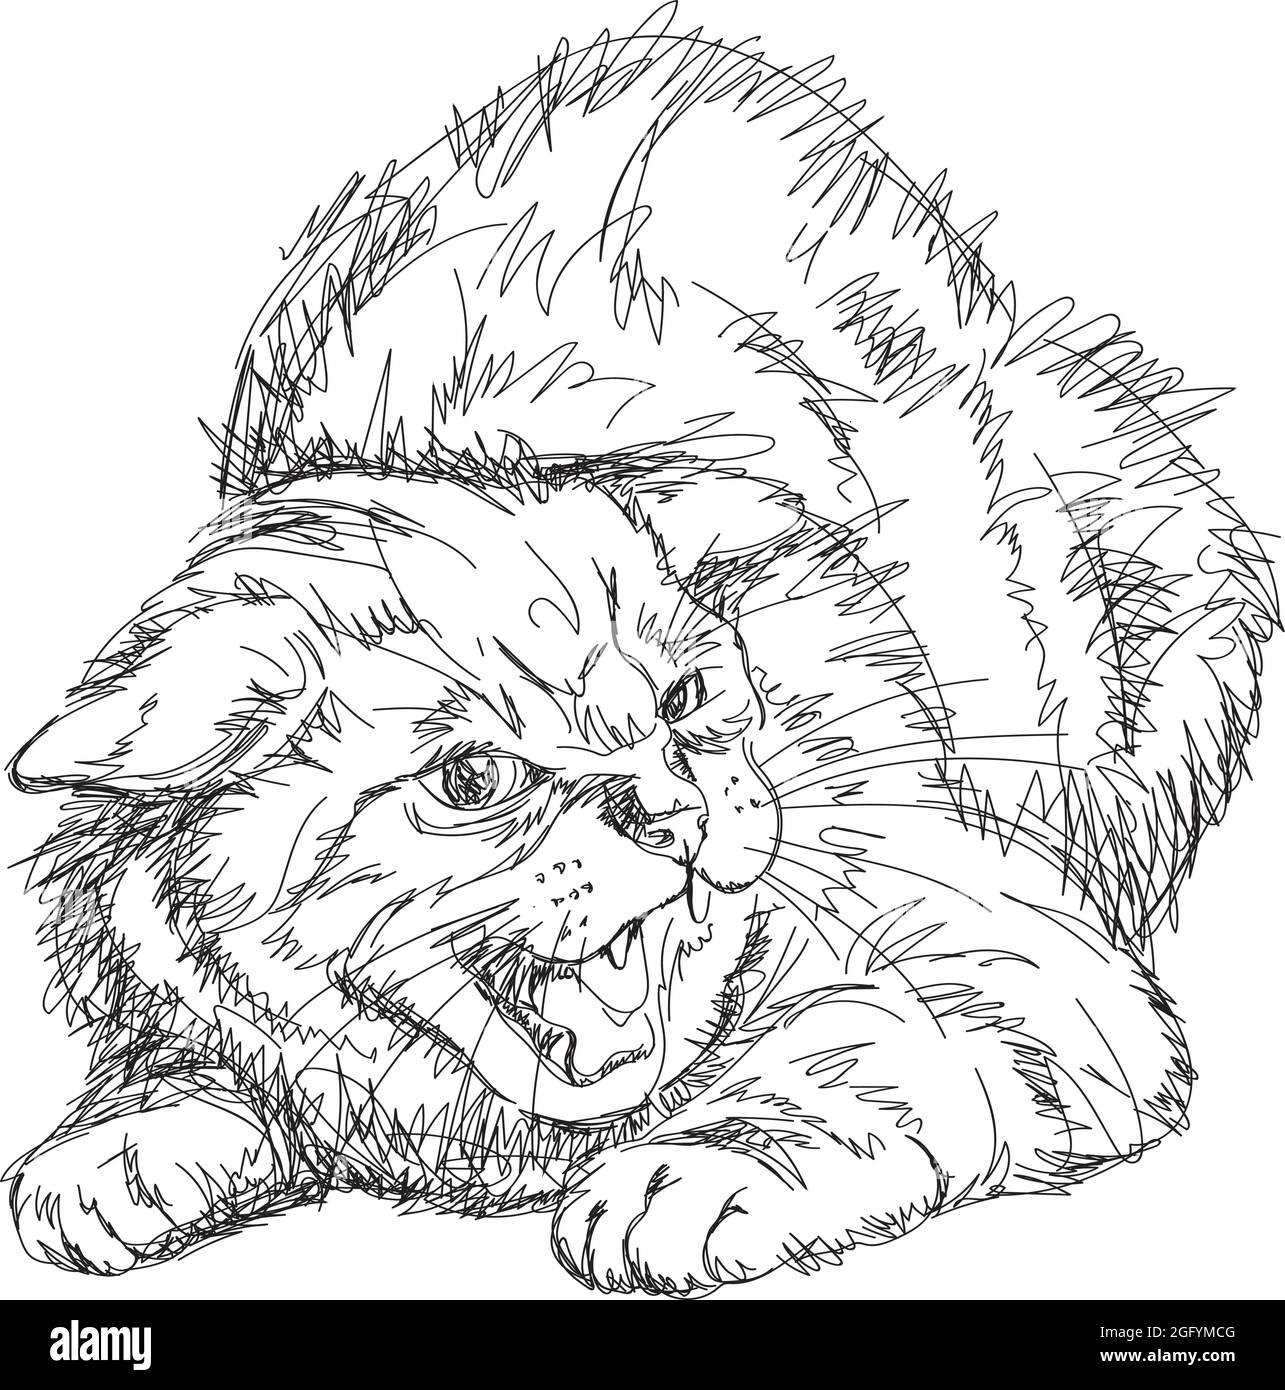 immagine di un gatto, figura, grin di un muso, posa aggressiva di un gatto, l'immagine della figura di un gatto grinning in una posa aggressiva Illustrazione Vettoriale